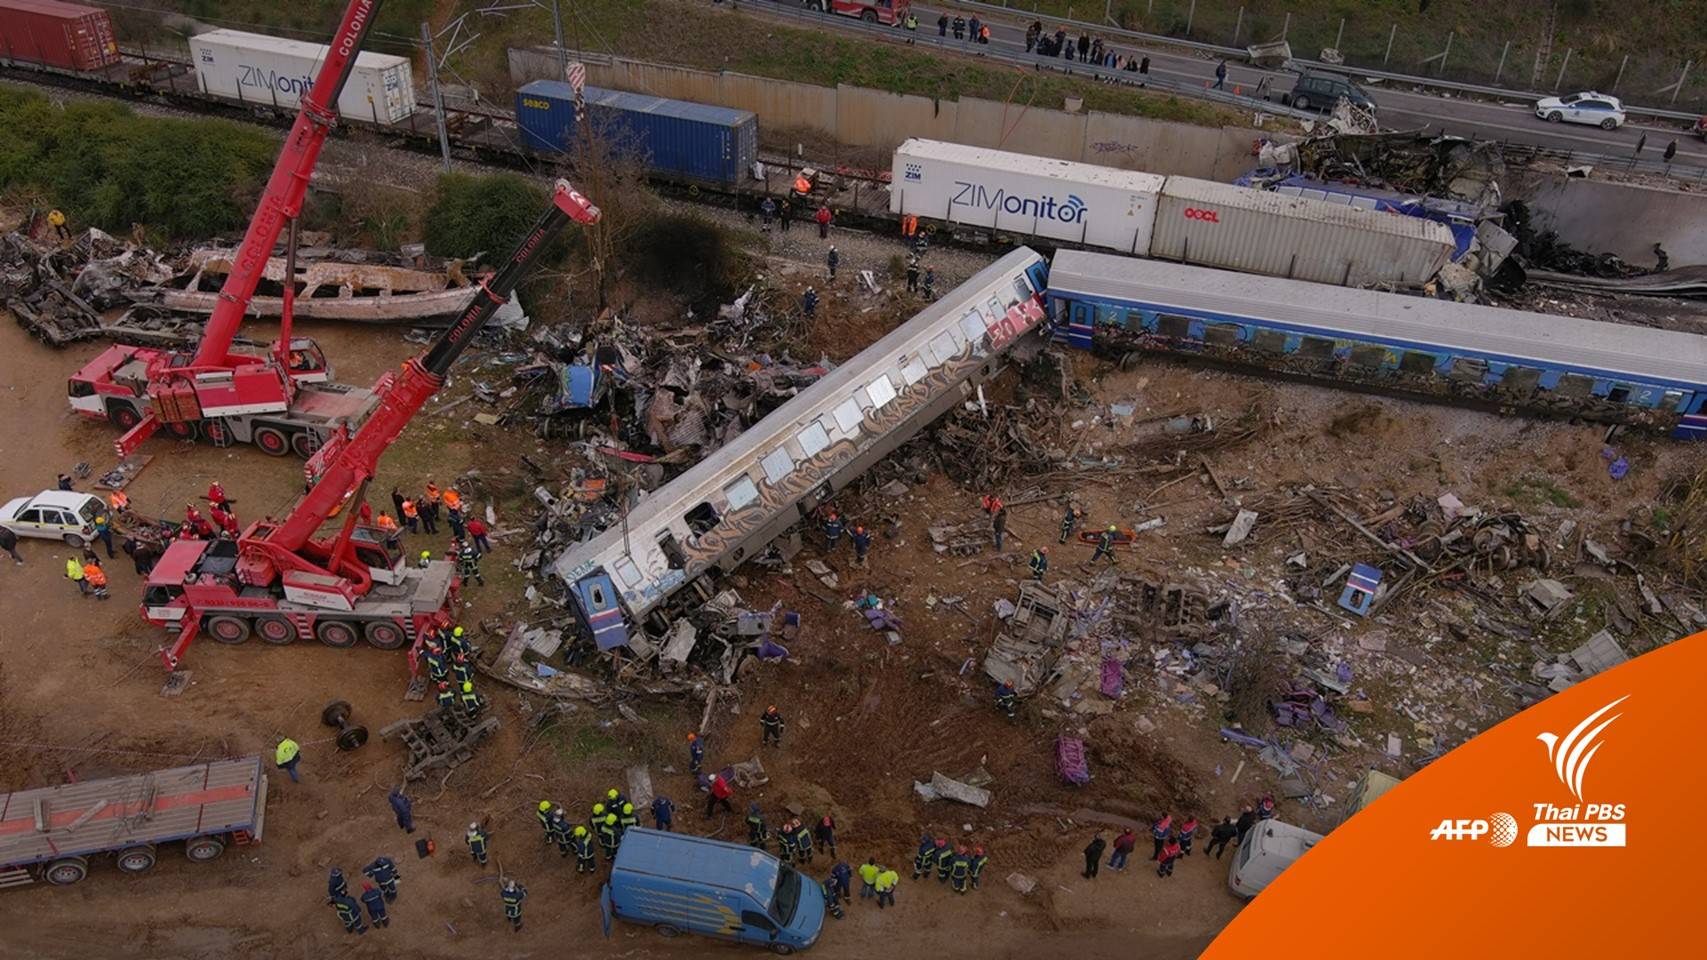 รมต.คมนาคมกรีซ "ลาออก" หลังรถไฟชนกันตายมากกว่า 40 คน